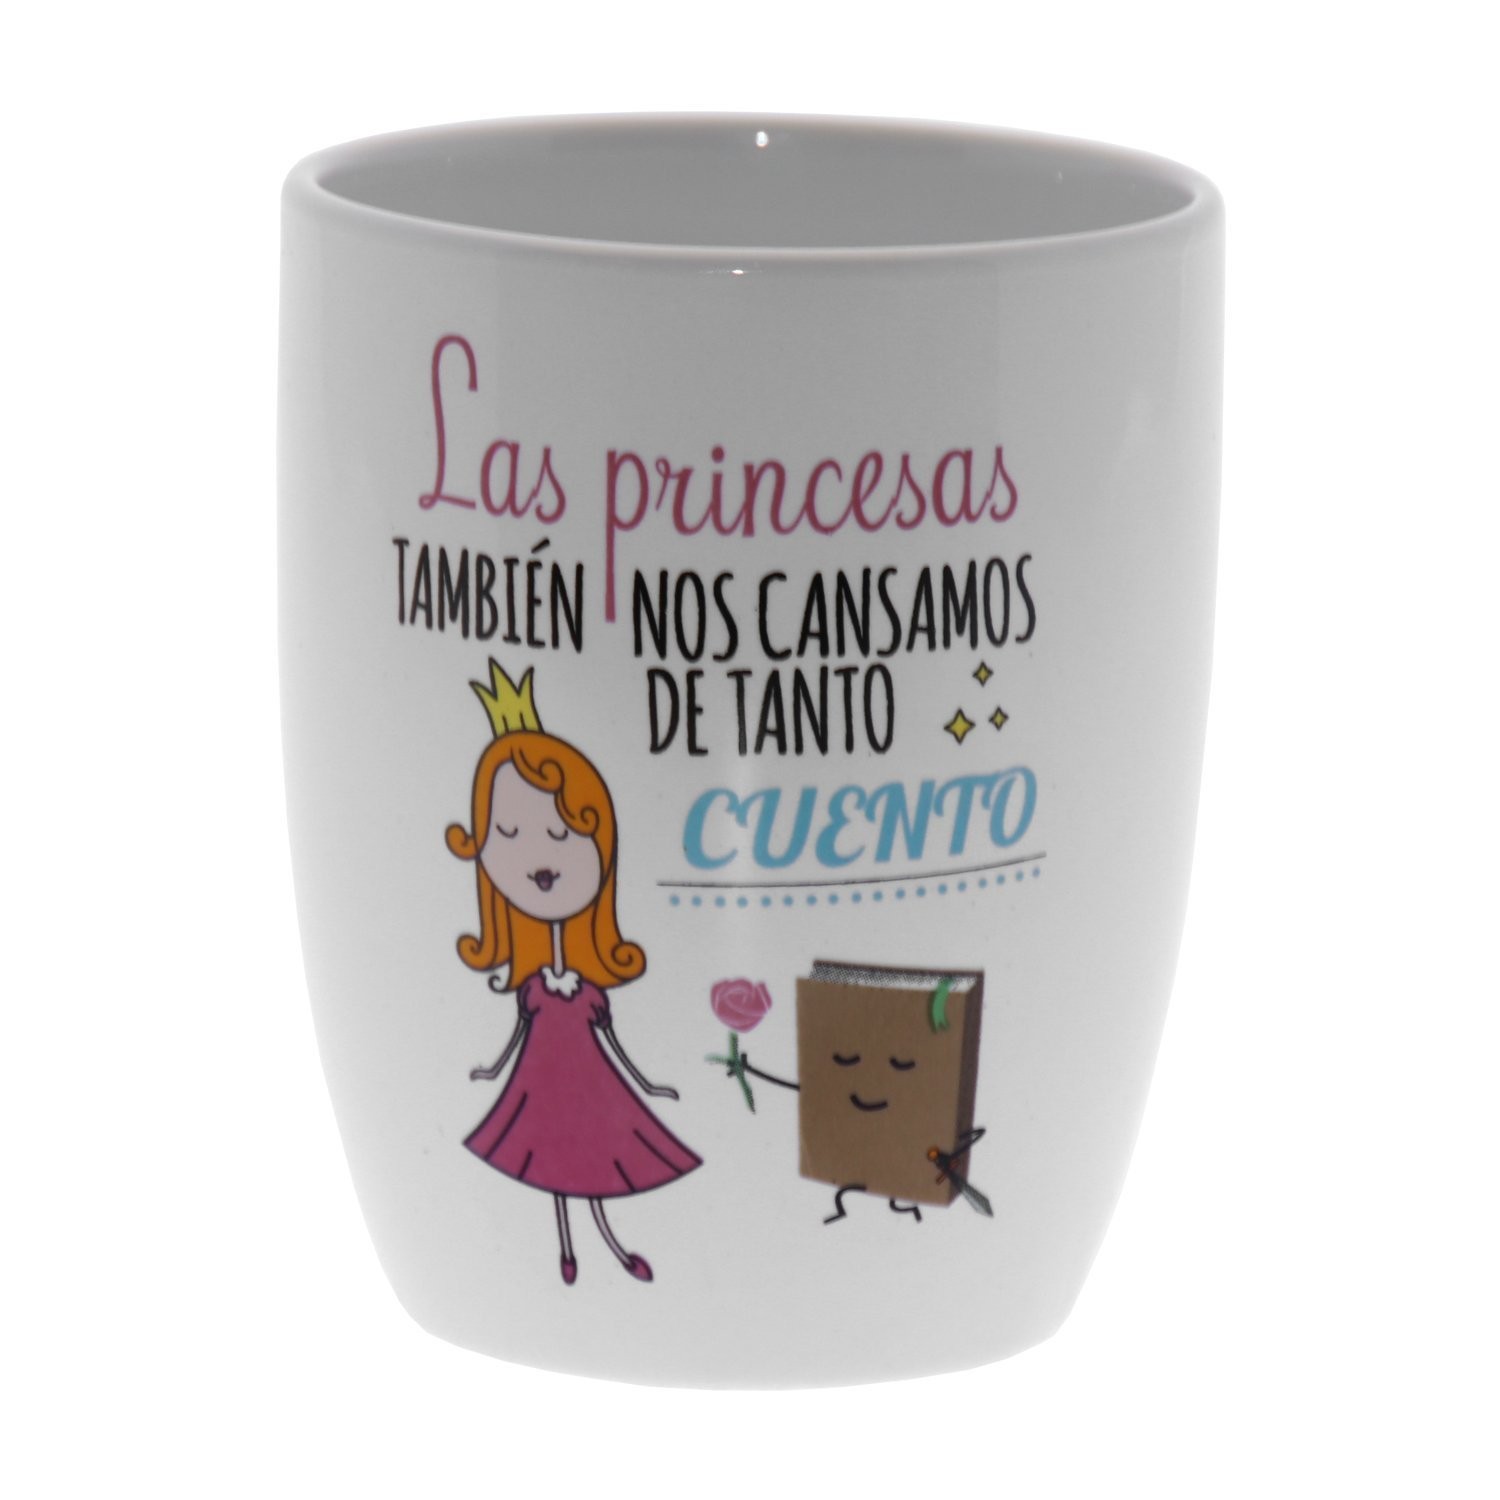 https://www.jcsystems.es/Tienda/2361/original-taza-de-ceramica-decorada-con-la-frase-las-princesas-tambien-nos-cansamos-de-tanto-cuento.jpg